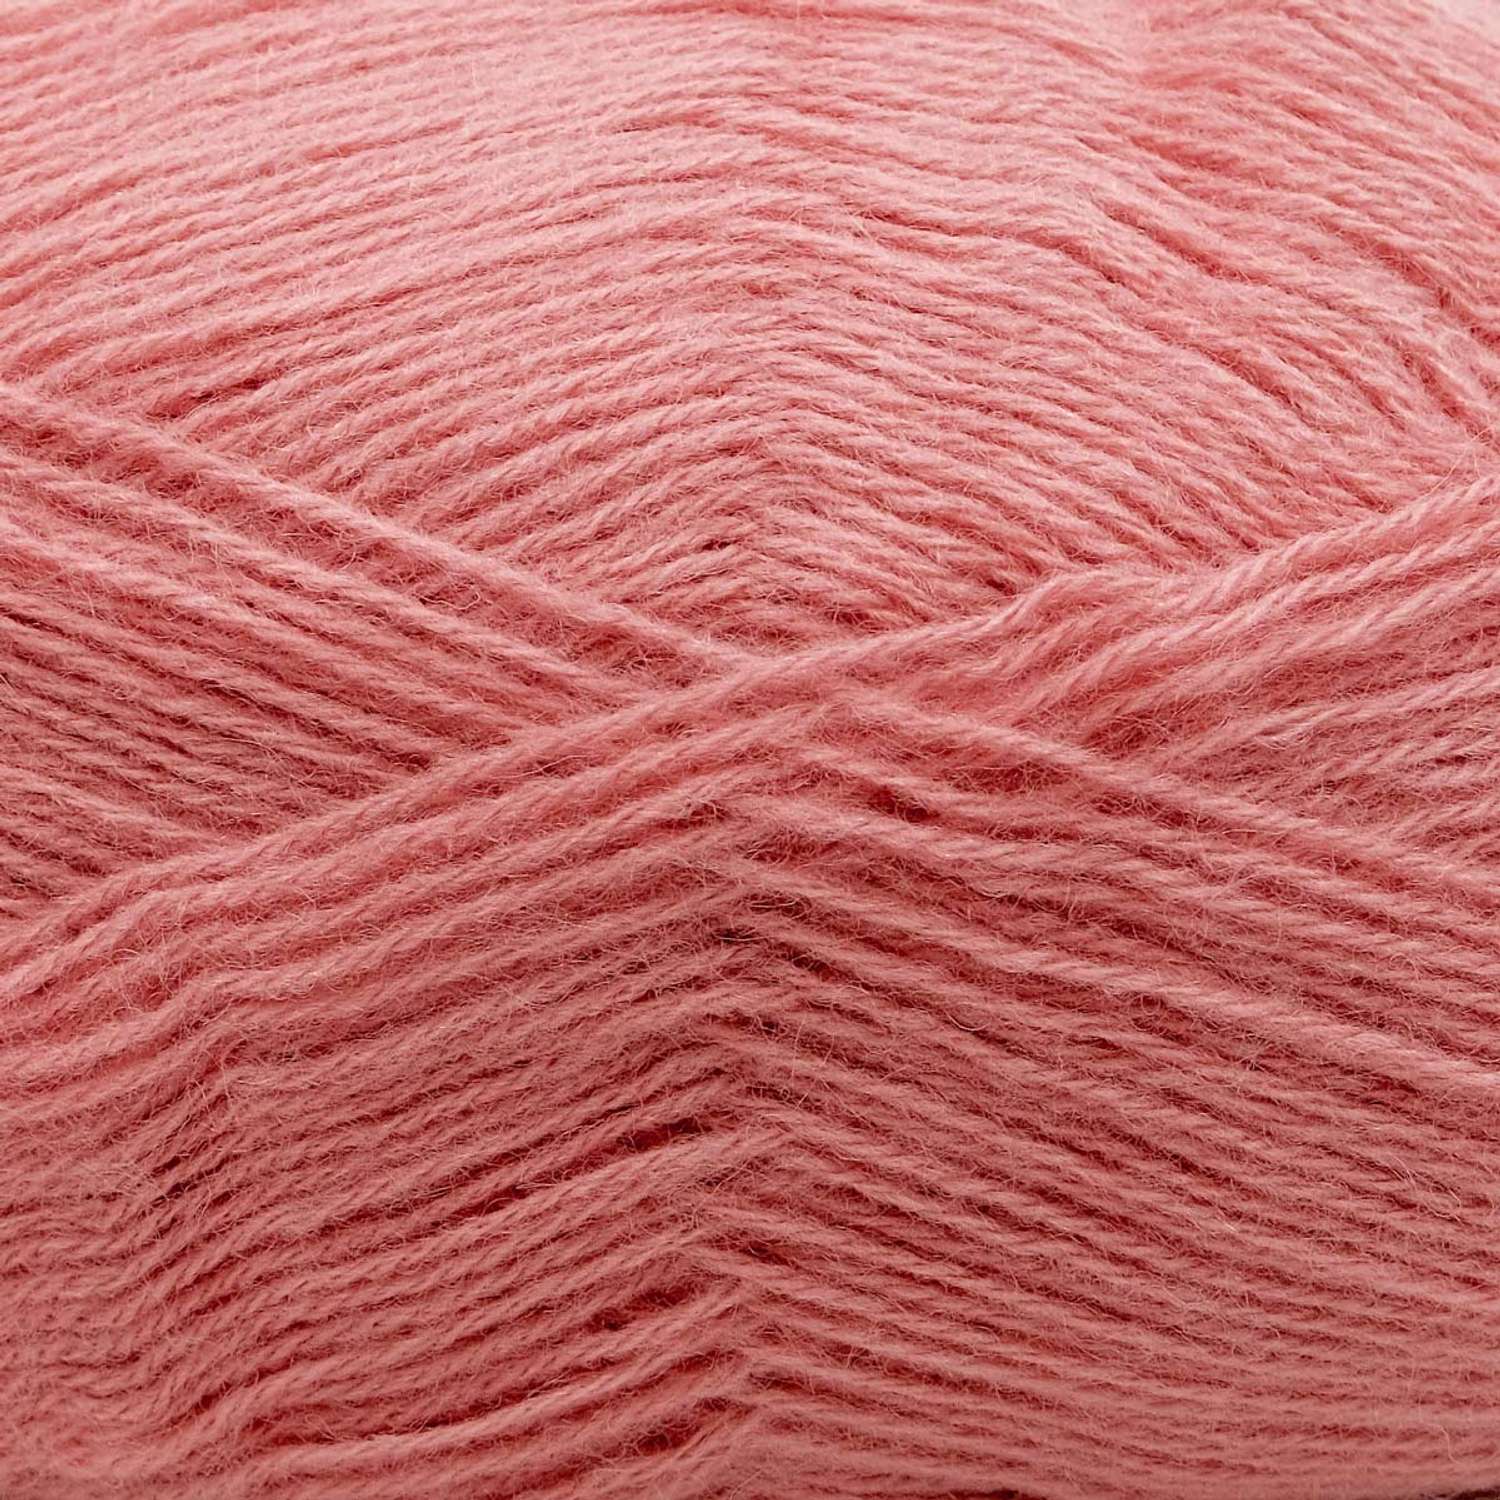 Пряжа Alize мягкая теплая для шарфов кардиганов Angora Gold 100 гр 550 м 5 мотков 144 старо-розовый - фото 7